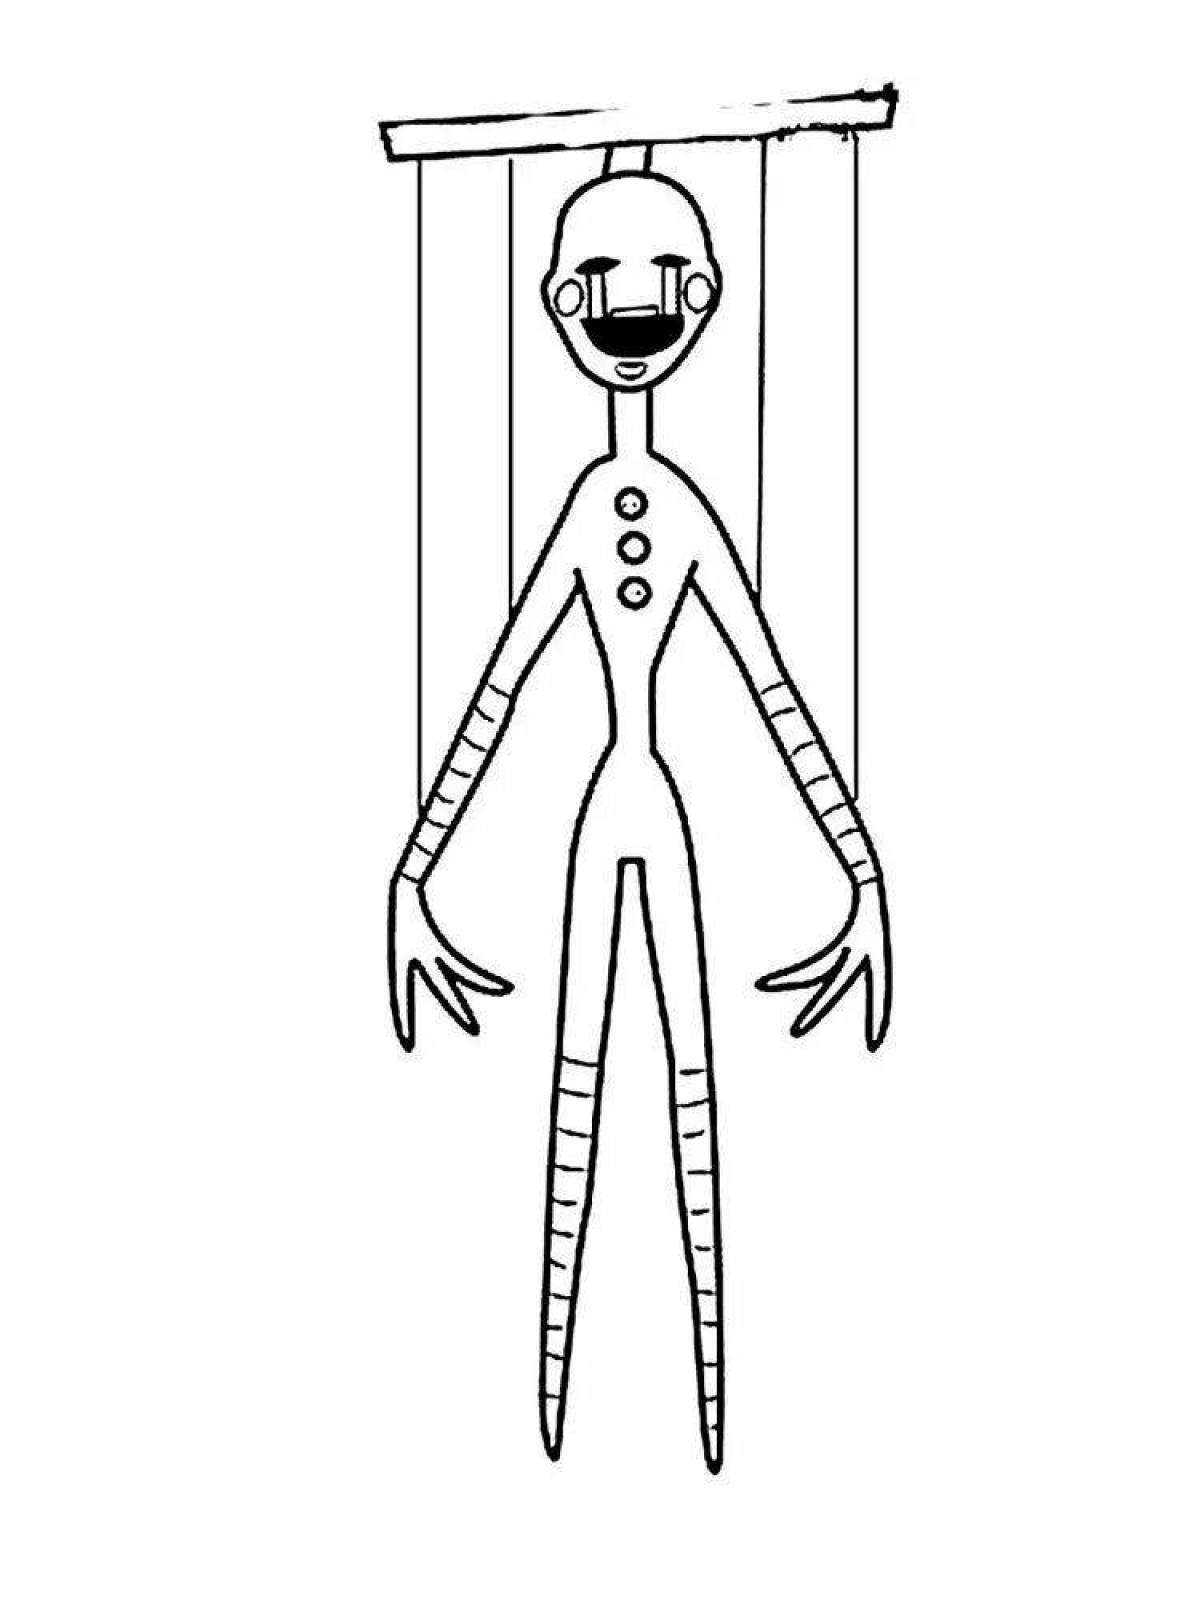 Fnaf puppet #2